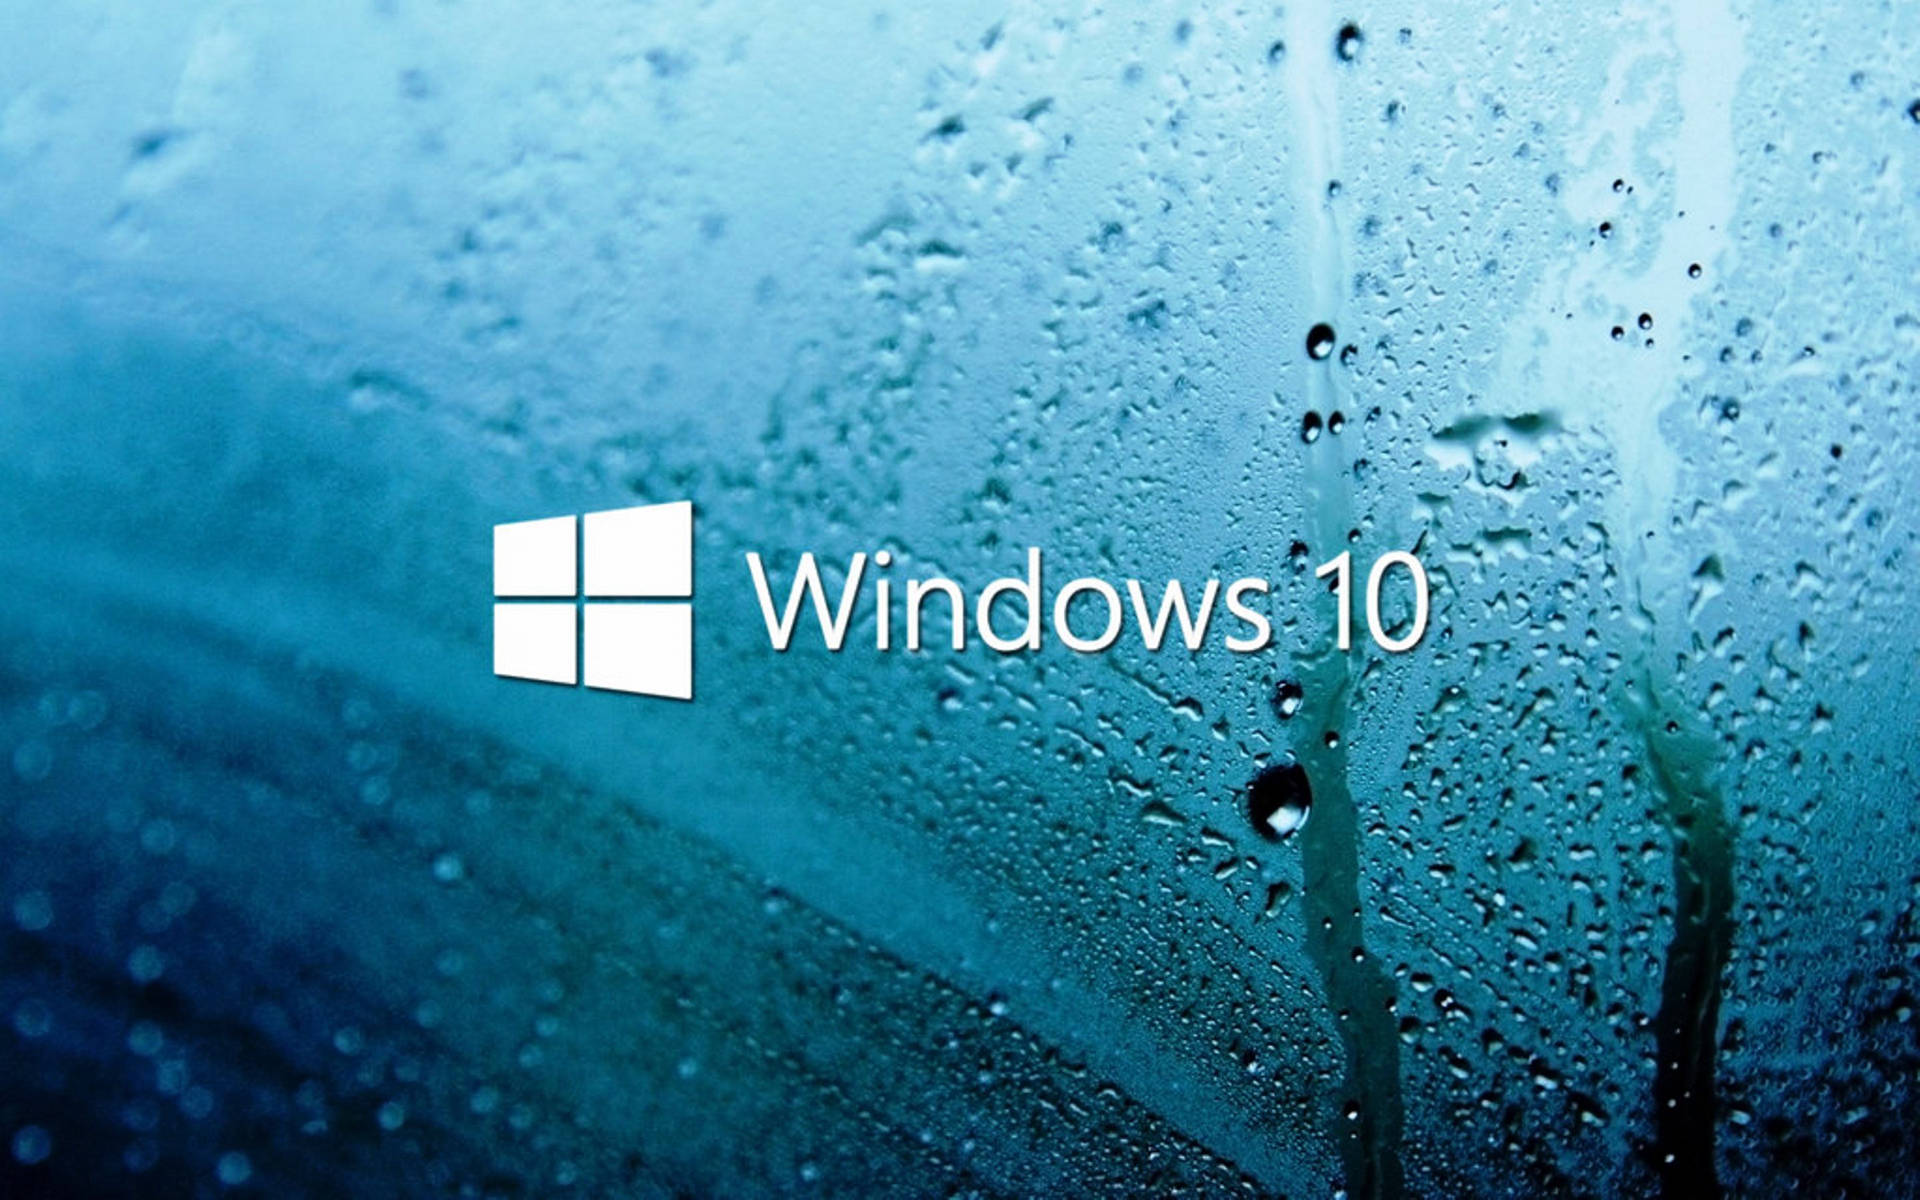 Windows 10 Hd Moist Glass Wallpaper